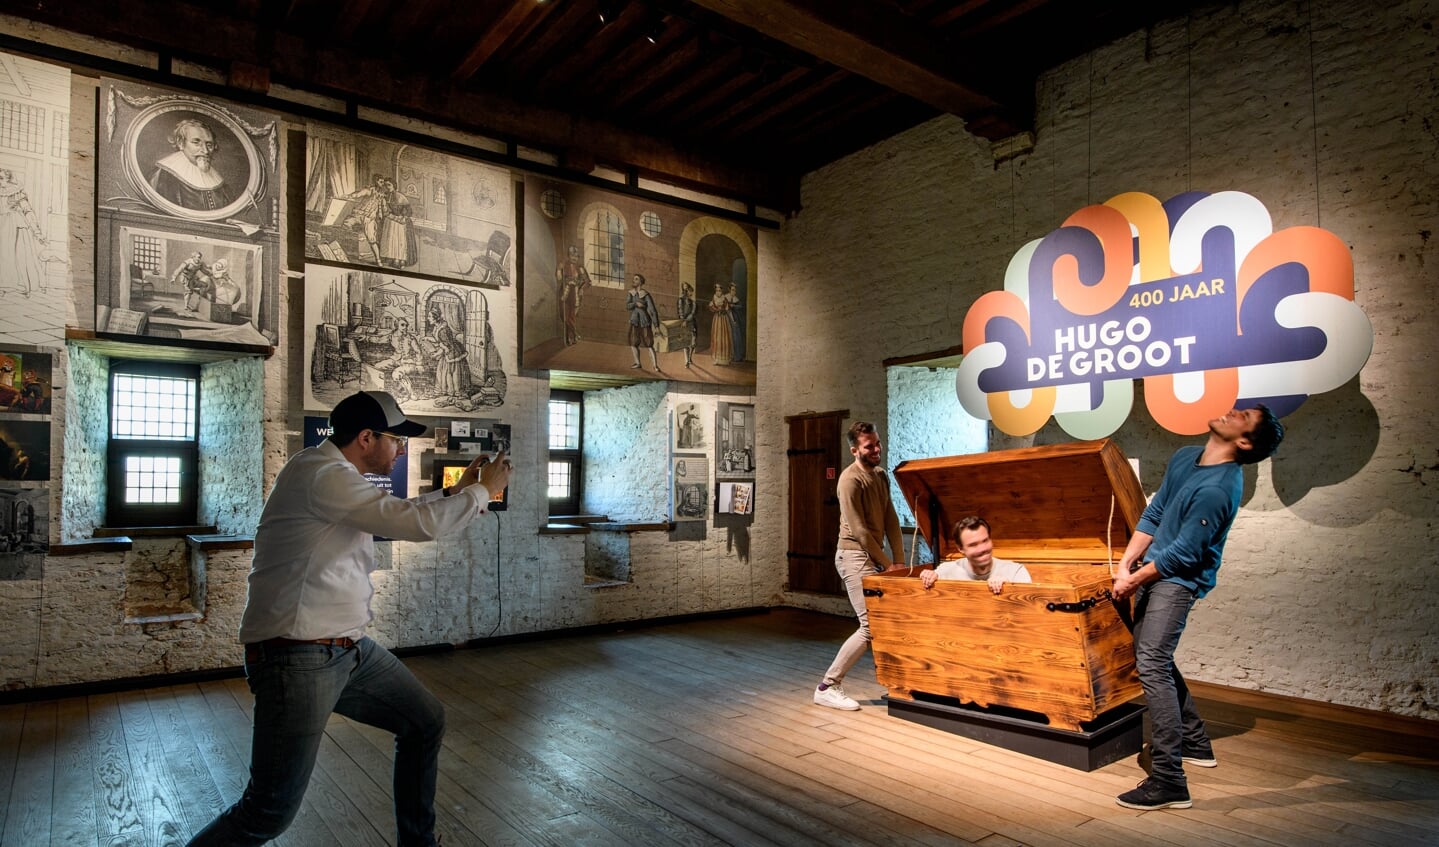 Op Slot Loevestein is een expositie ingericht over 400 jaar Hugo de Groot